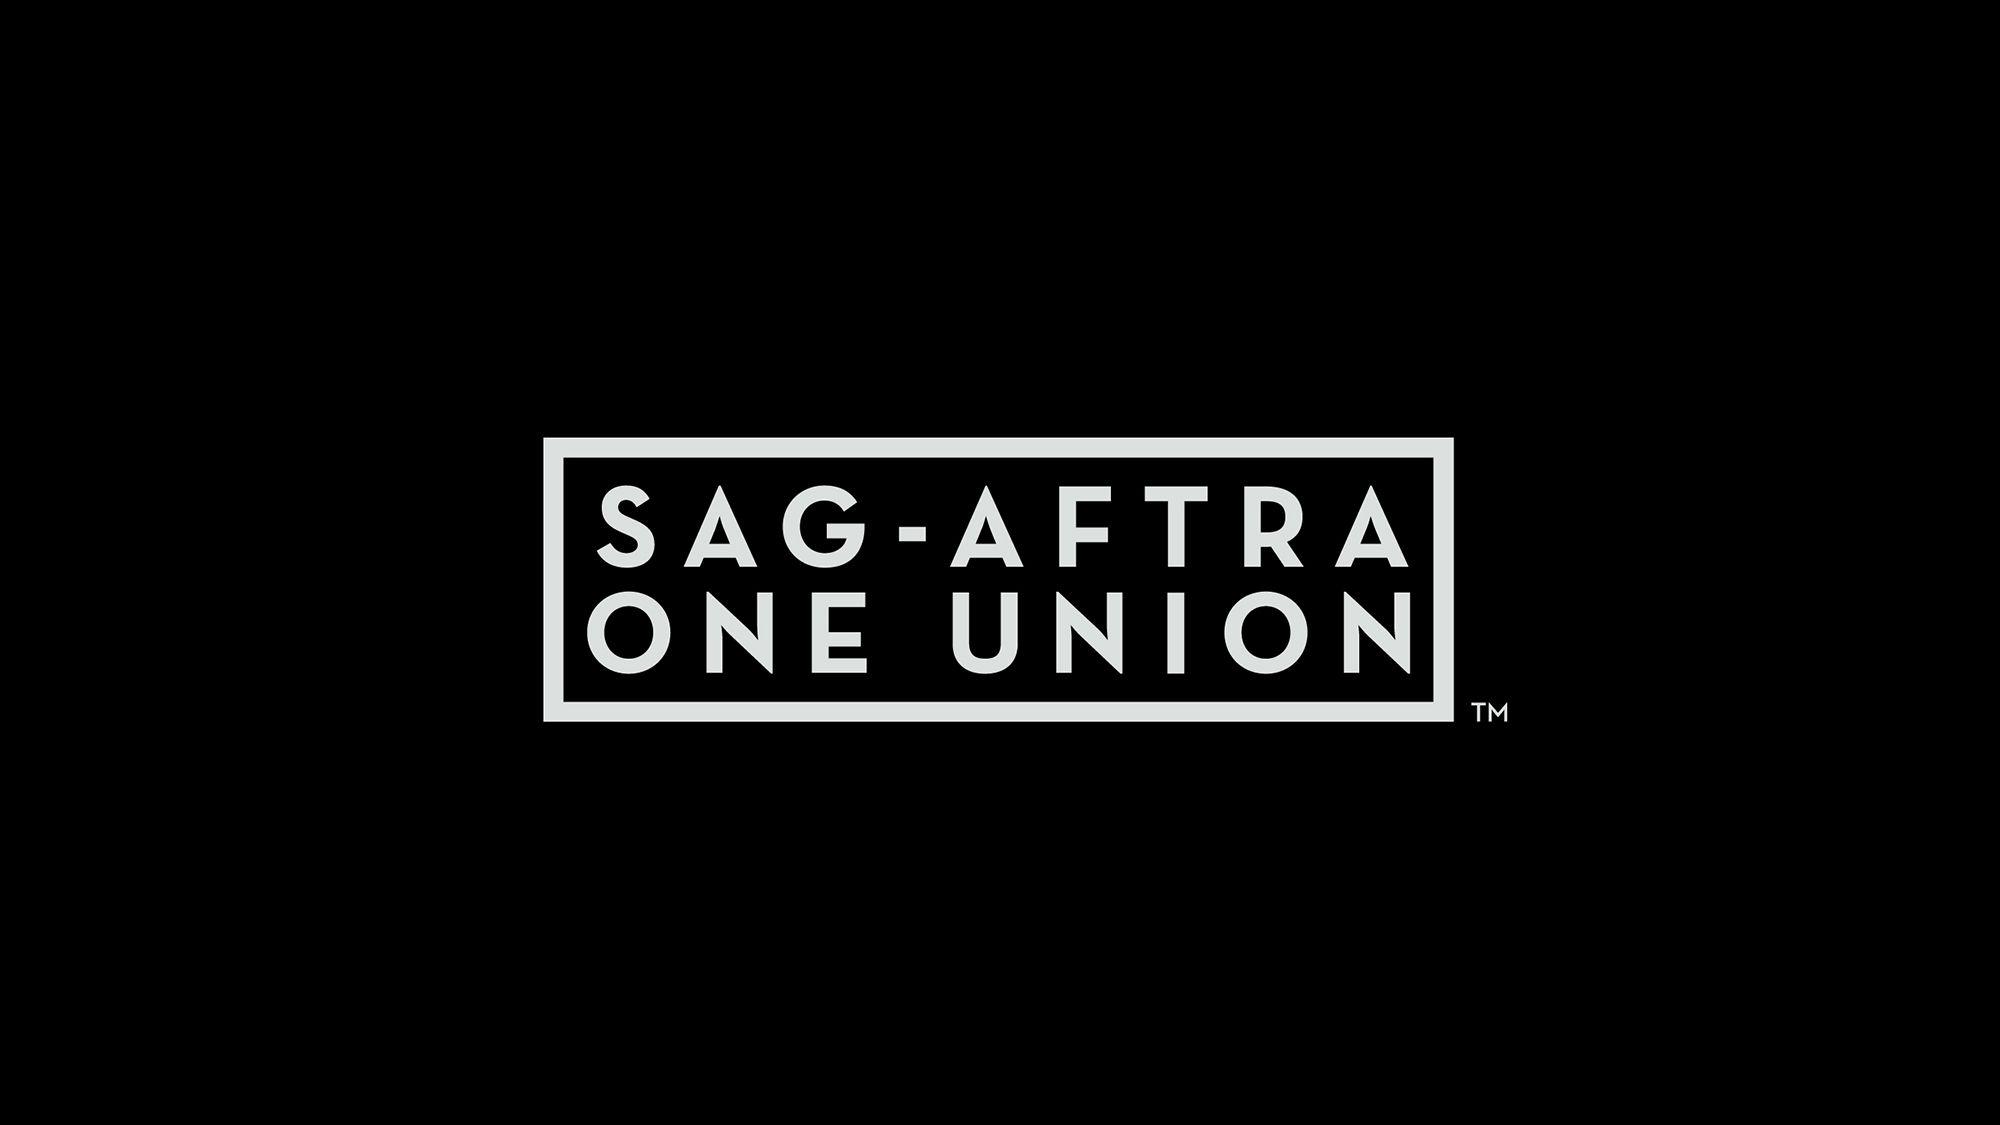 Sag Logo - SAG AFTRA's David White Reorganizes Top Staff